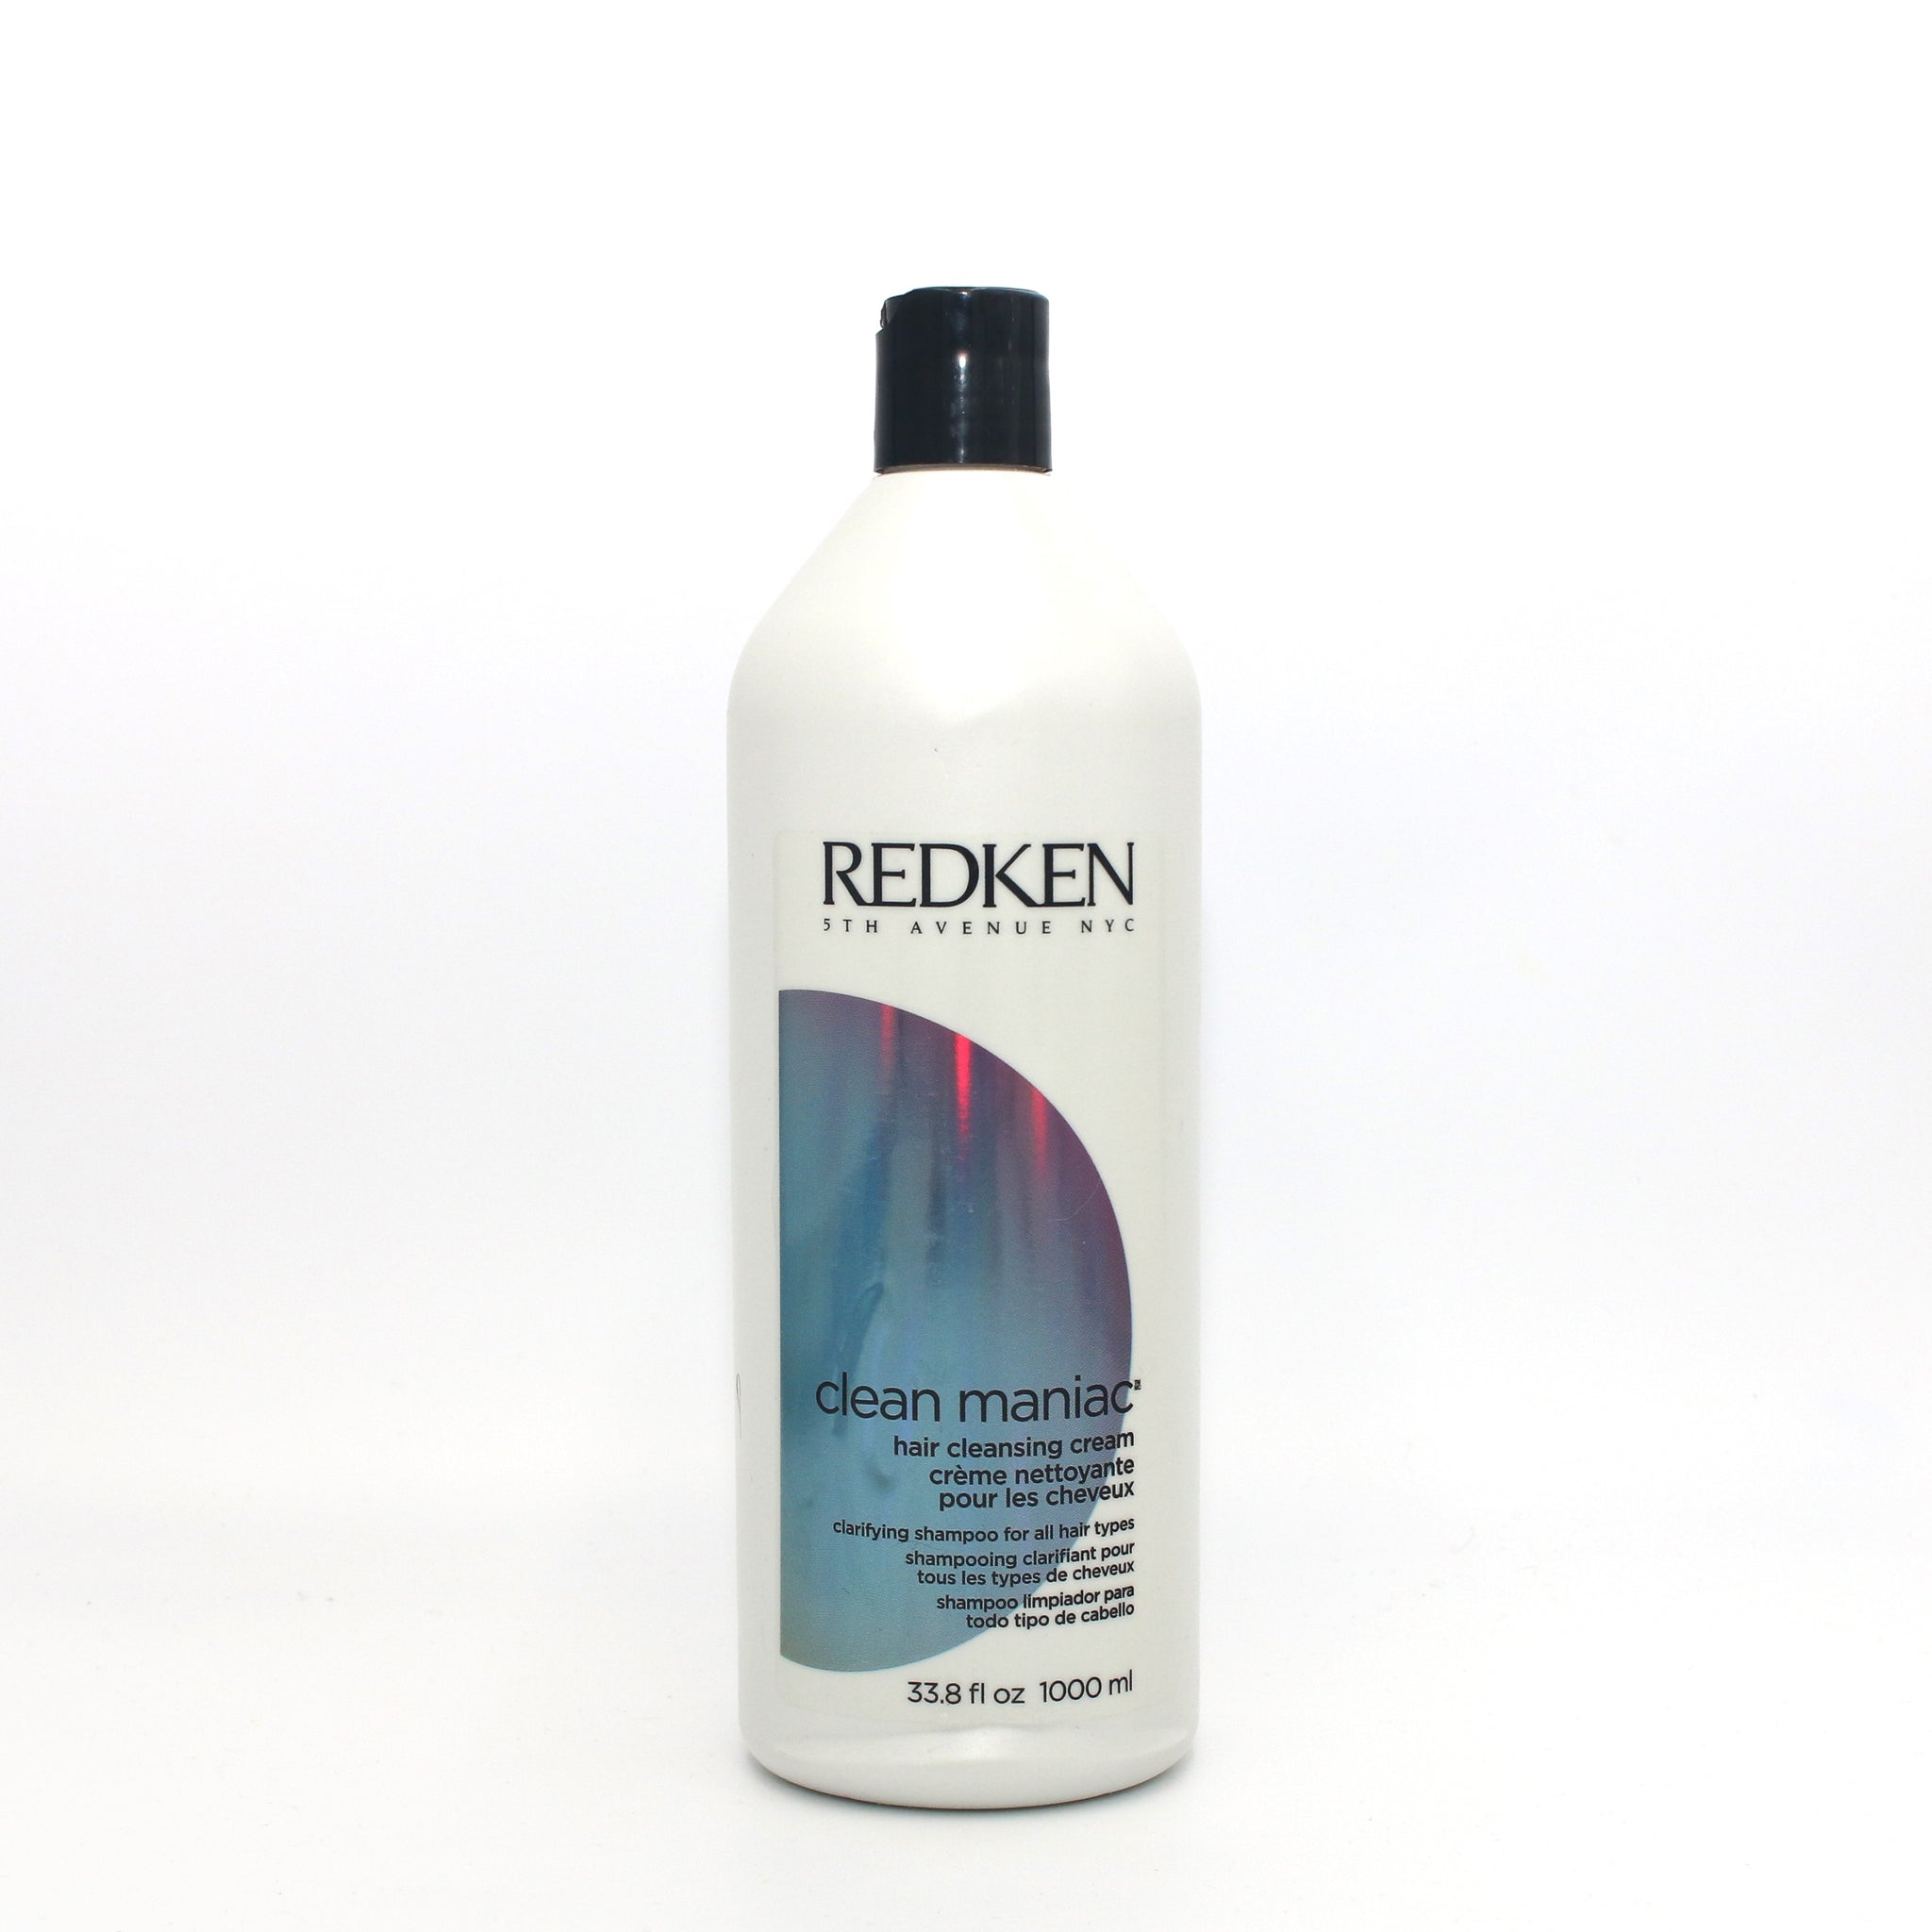 REDKEN Clean Maniac Hair Cleansing Cream Shampoo 33.8 oz